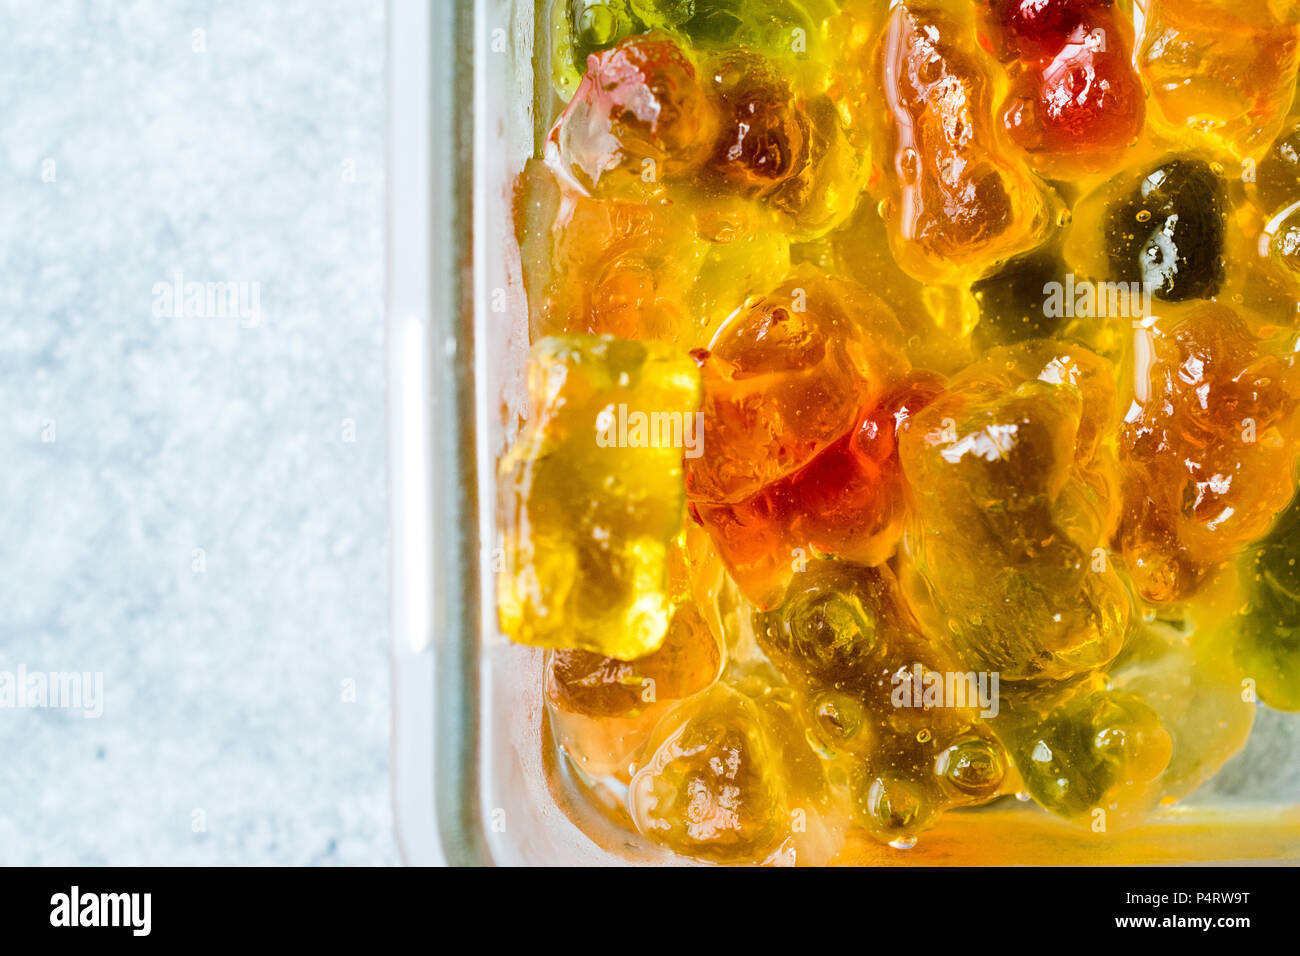 Gummibärchen mit Wodka im Glas Schüssel. Alkoholische Süsswaren Essen  Stockfotografie - Alamy